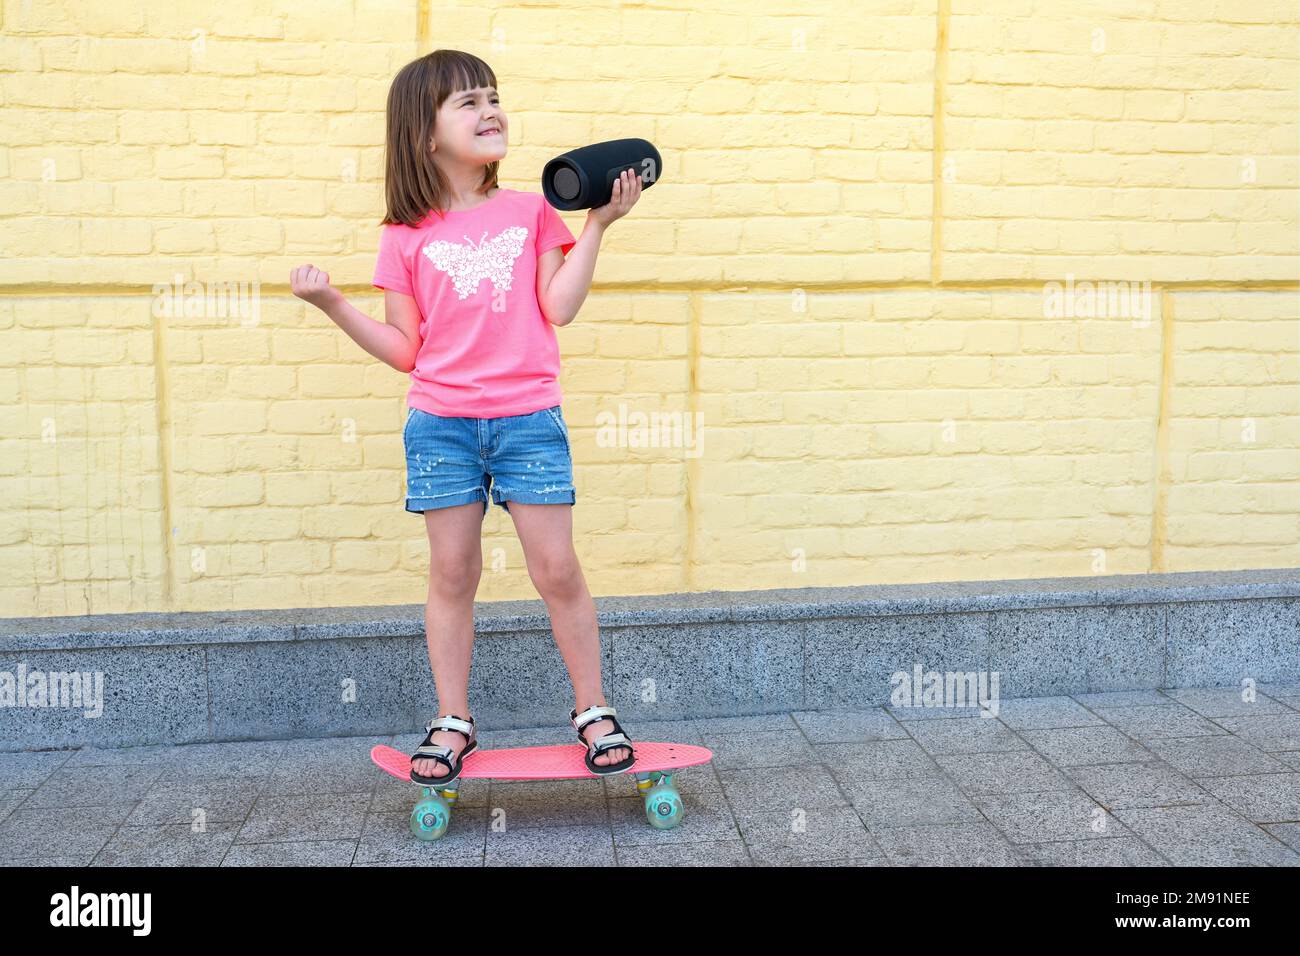 Skateur Asiatique Petite Fille Portant Un équipement De Sécurité Et De  Protection Jouant Sur Une Planche à Roulettes. Kid Skate Sur La Route à  L'extérieur